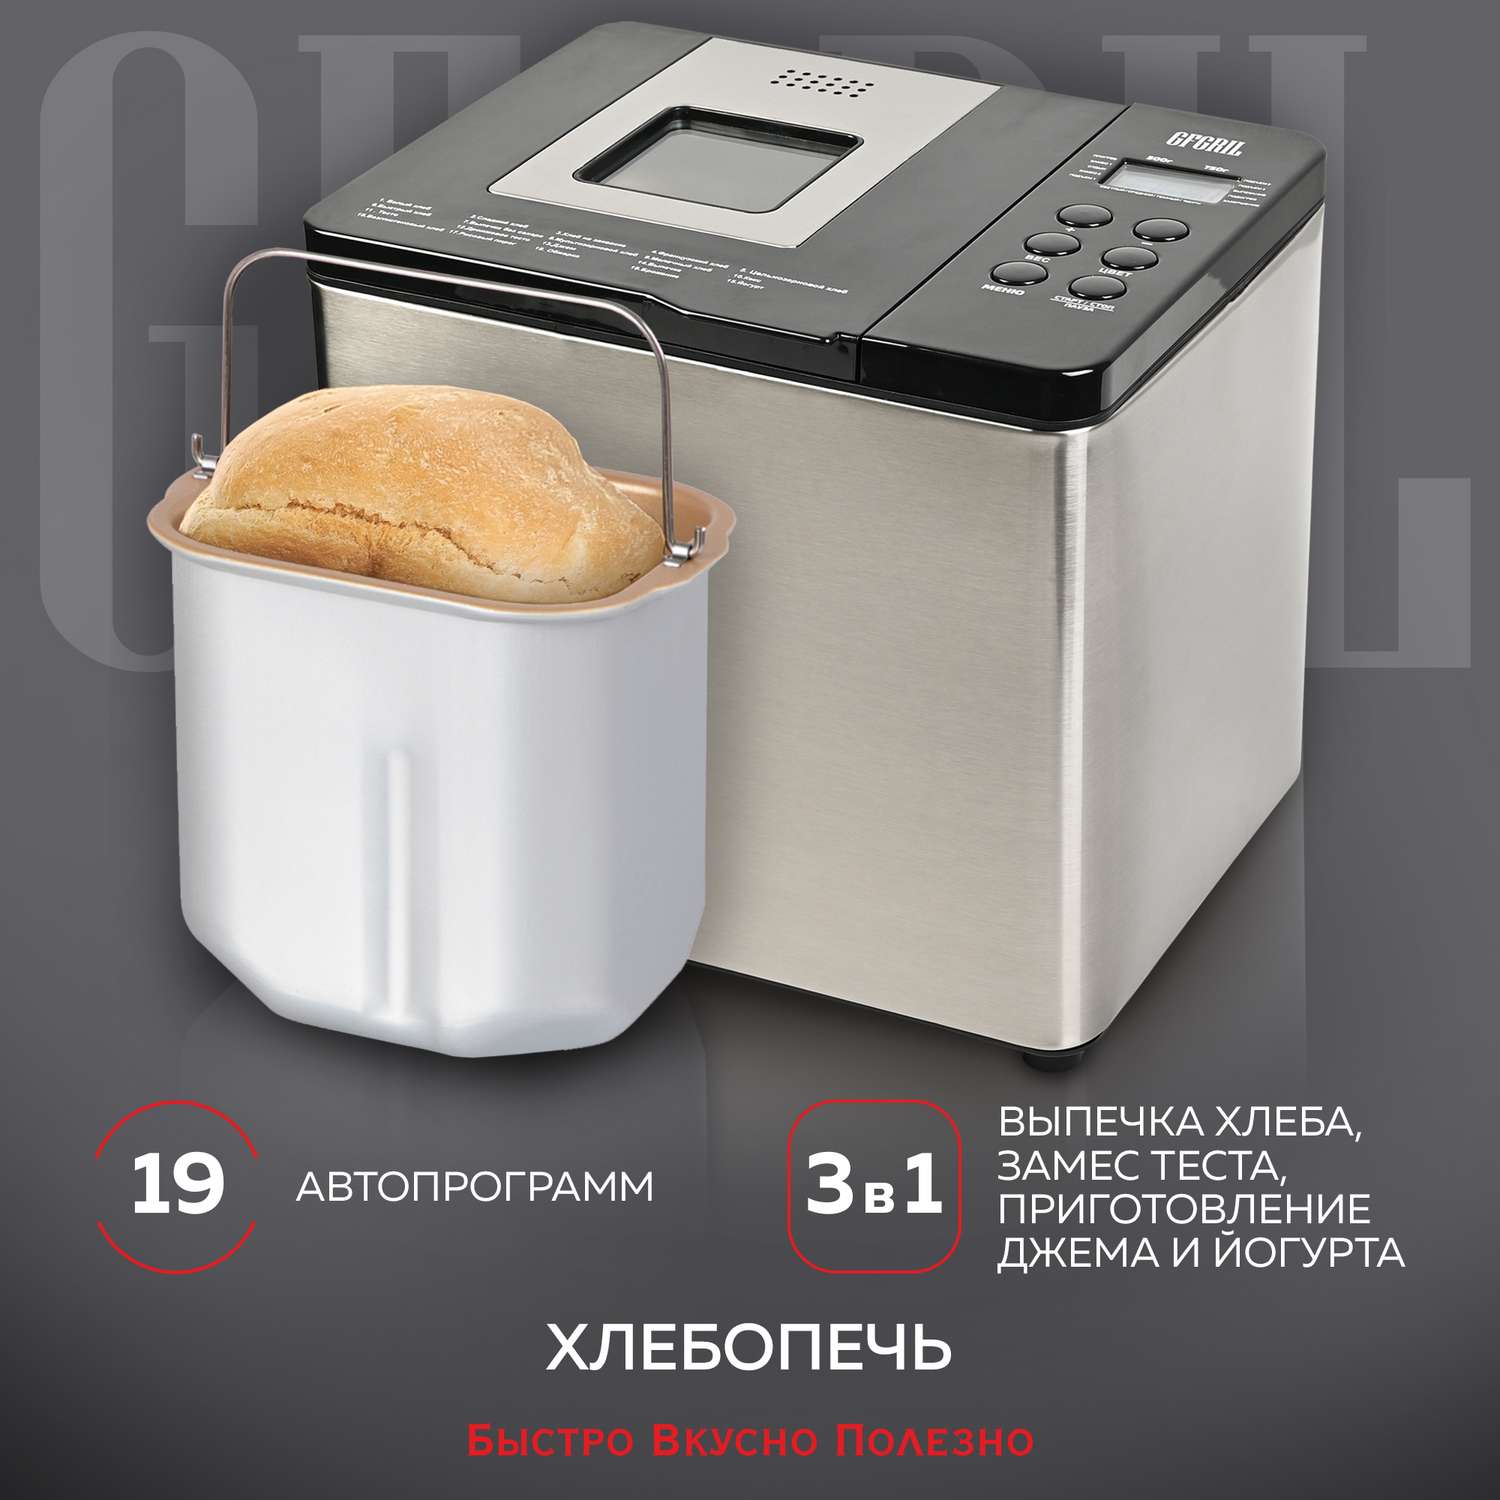 Хлебопечь GFGRIL GFB-3000 3 в 1 выпечка хлеба замес теста приготовление йогурта - фото 1